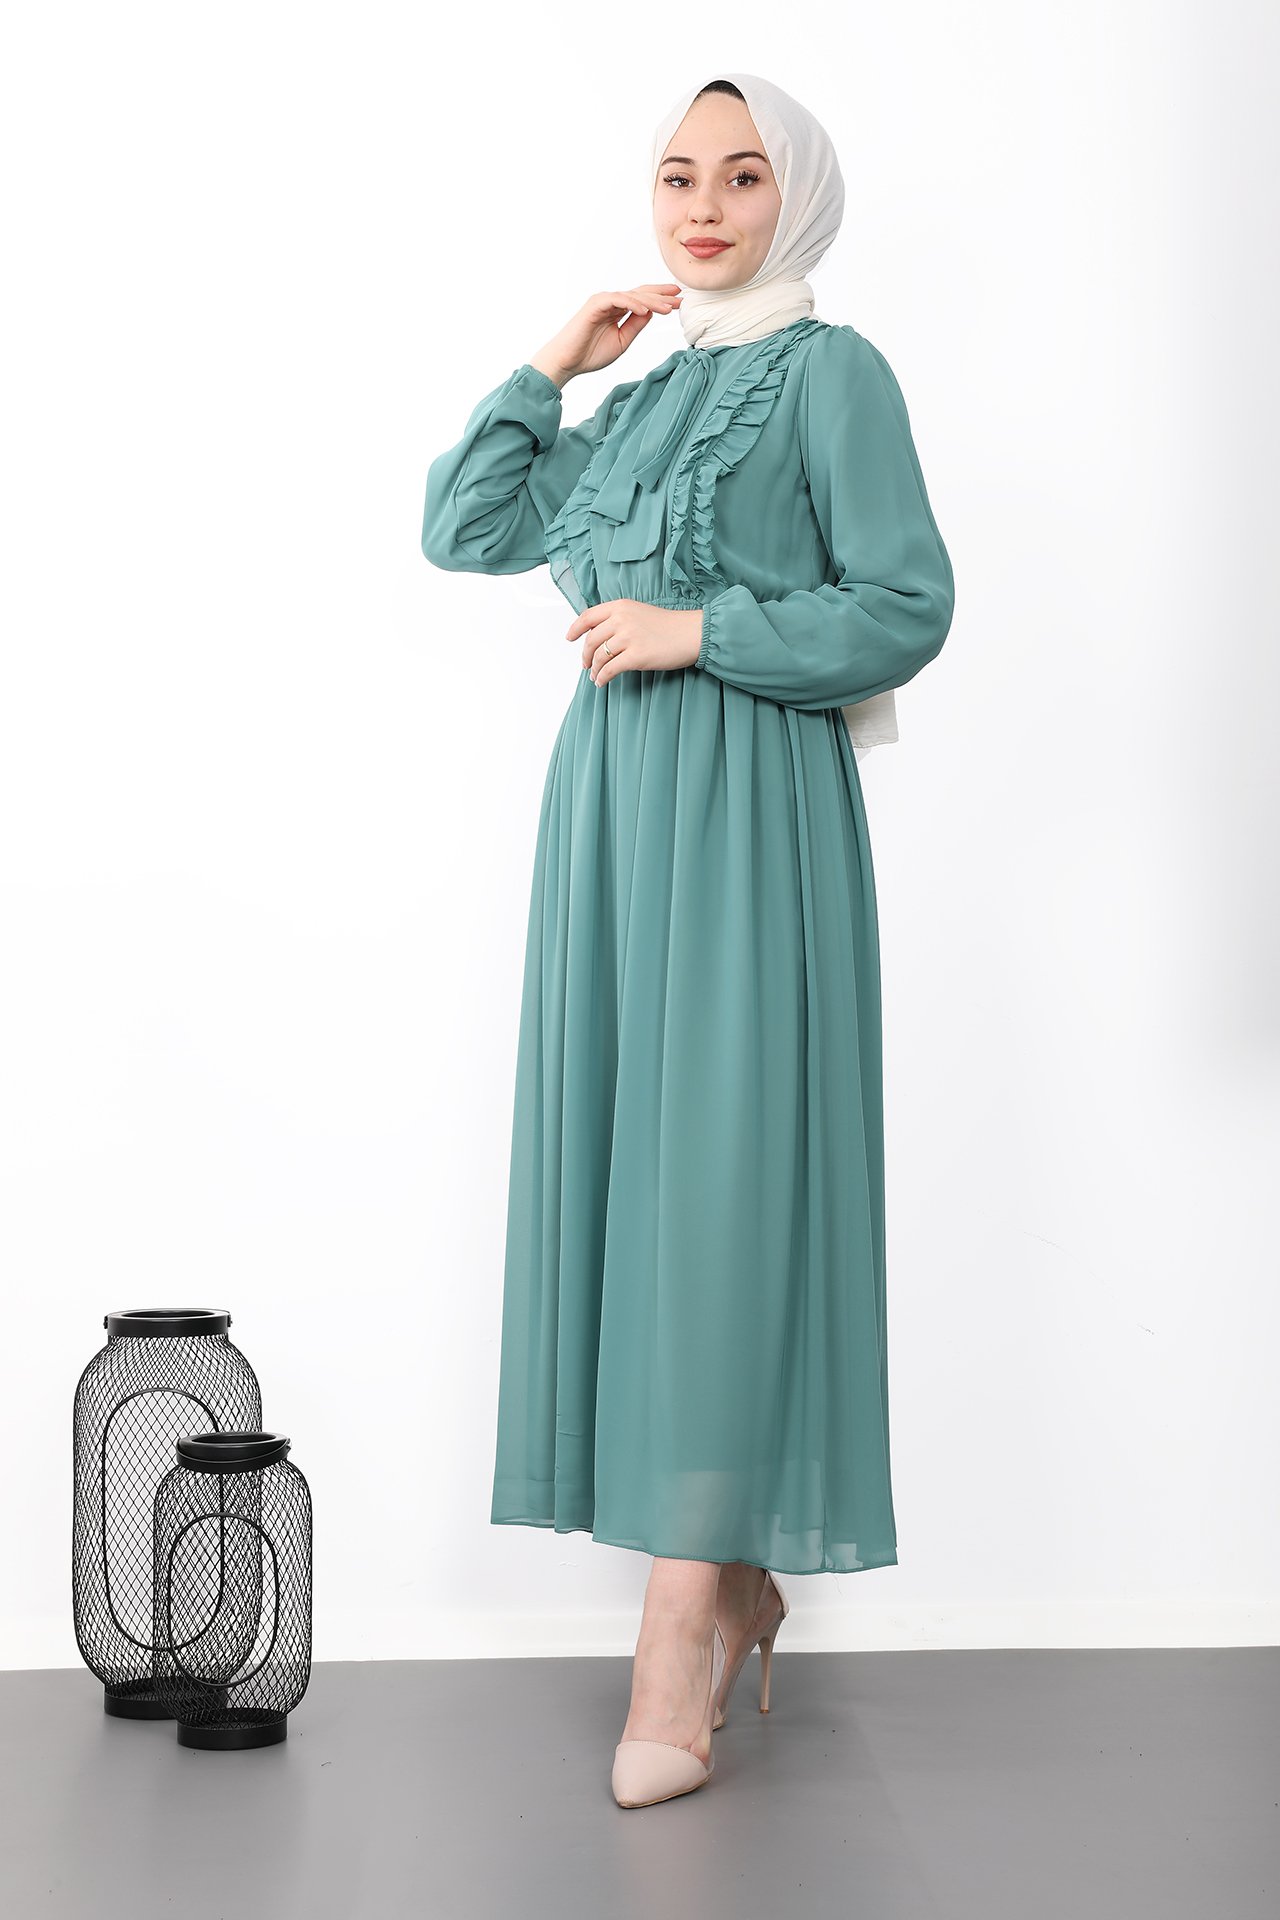 GİZAGİYİM - Fırfırlı Şifon Tesettür Elbise Mint